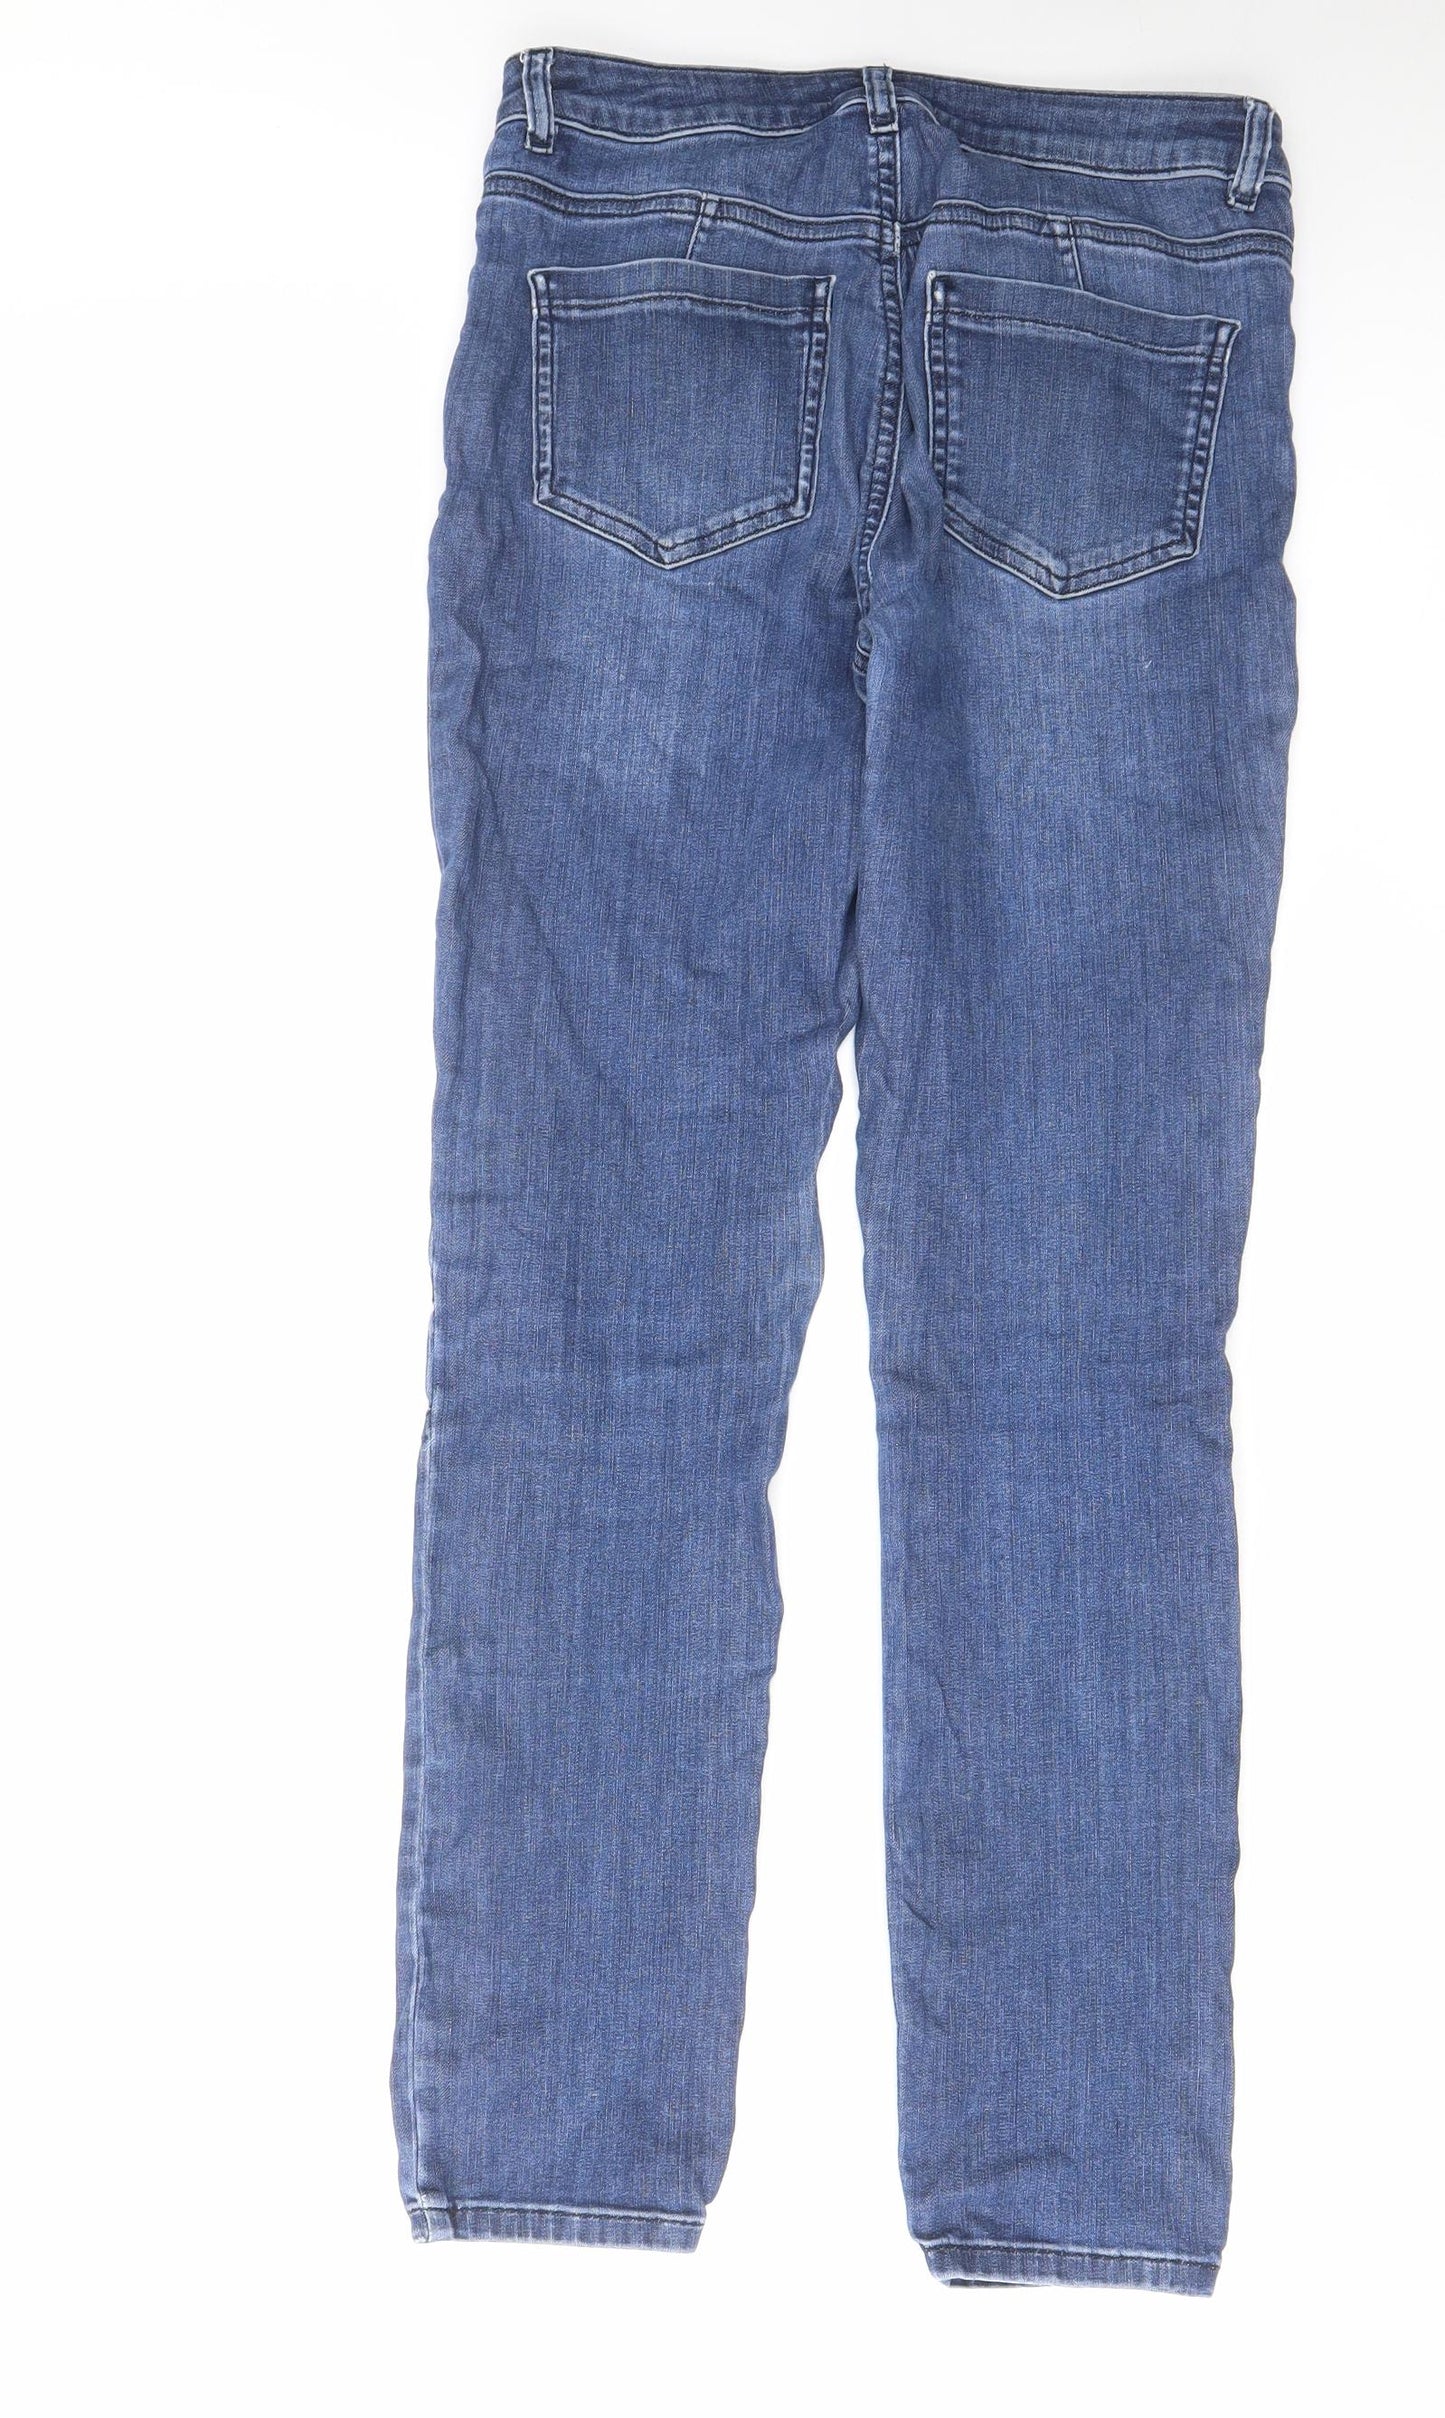 Mint Velvet Womens Blue Cotton Skinny Jeans Size 10 L30 in Regular Zip